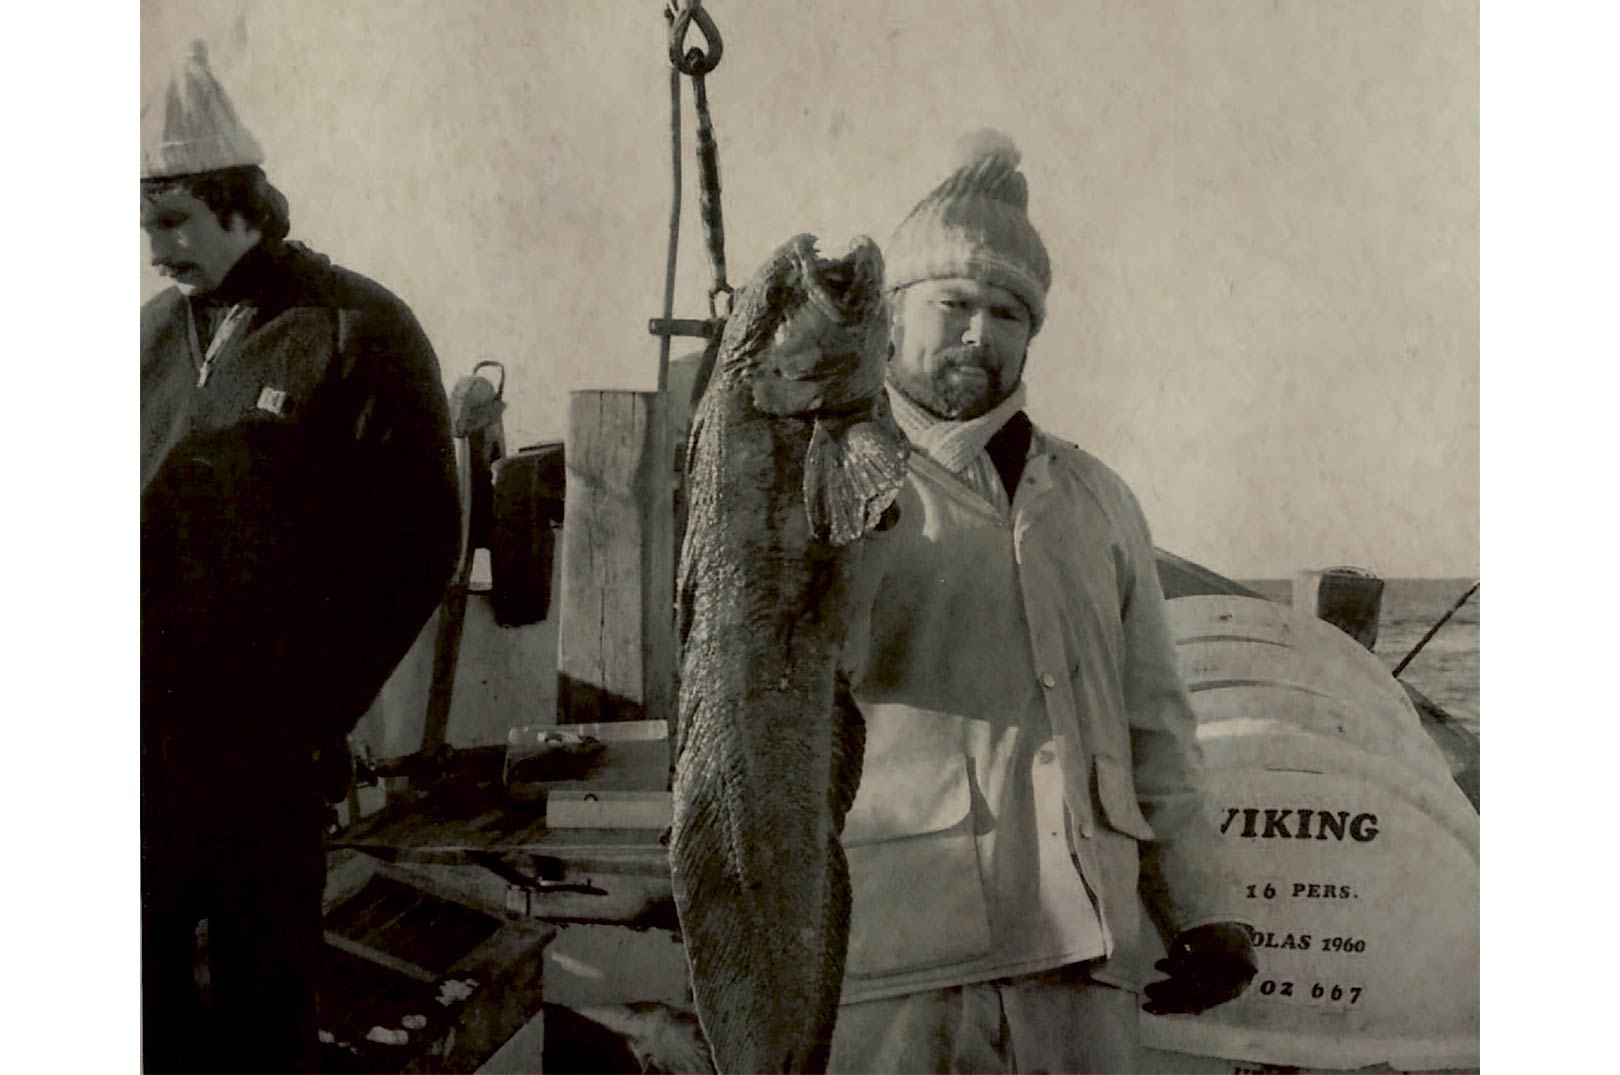 Mellem torskene dukkede der i startfirserne også andre arter op. Her fremviser Jørgen »Pirk« en havkat på 6,90 kilo fanget under torskefiskeri.